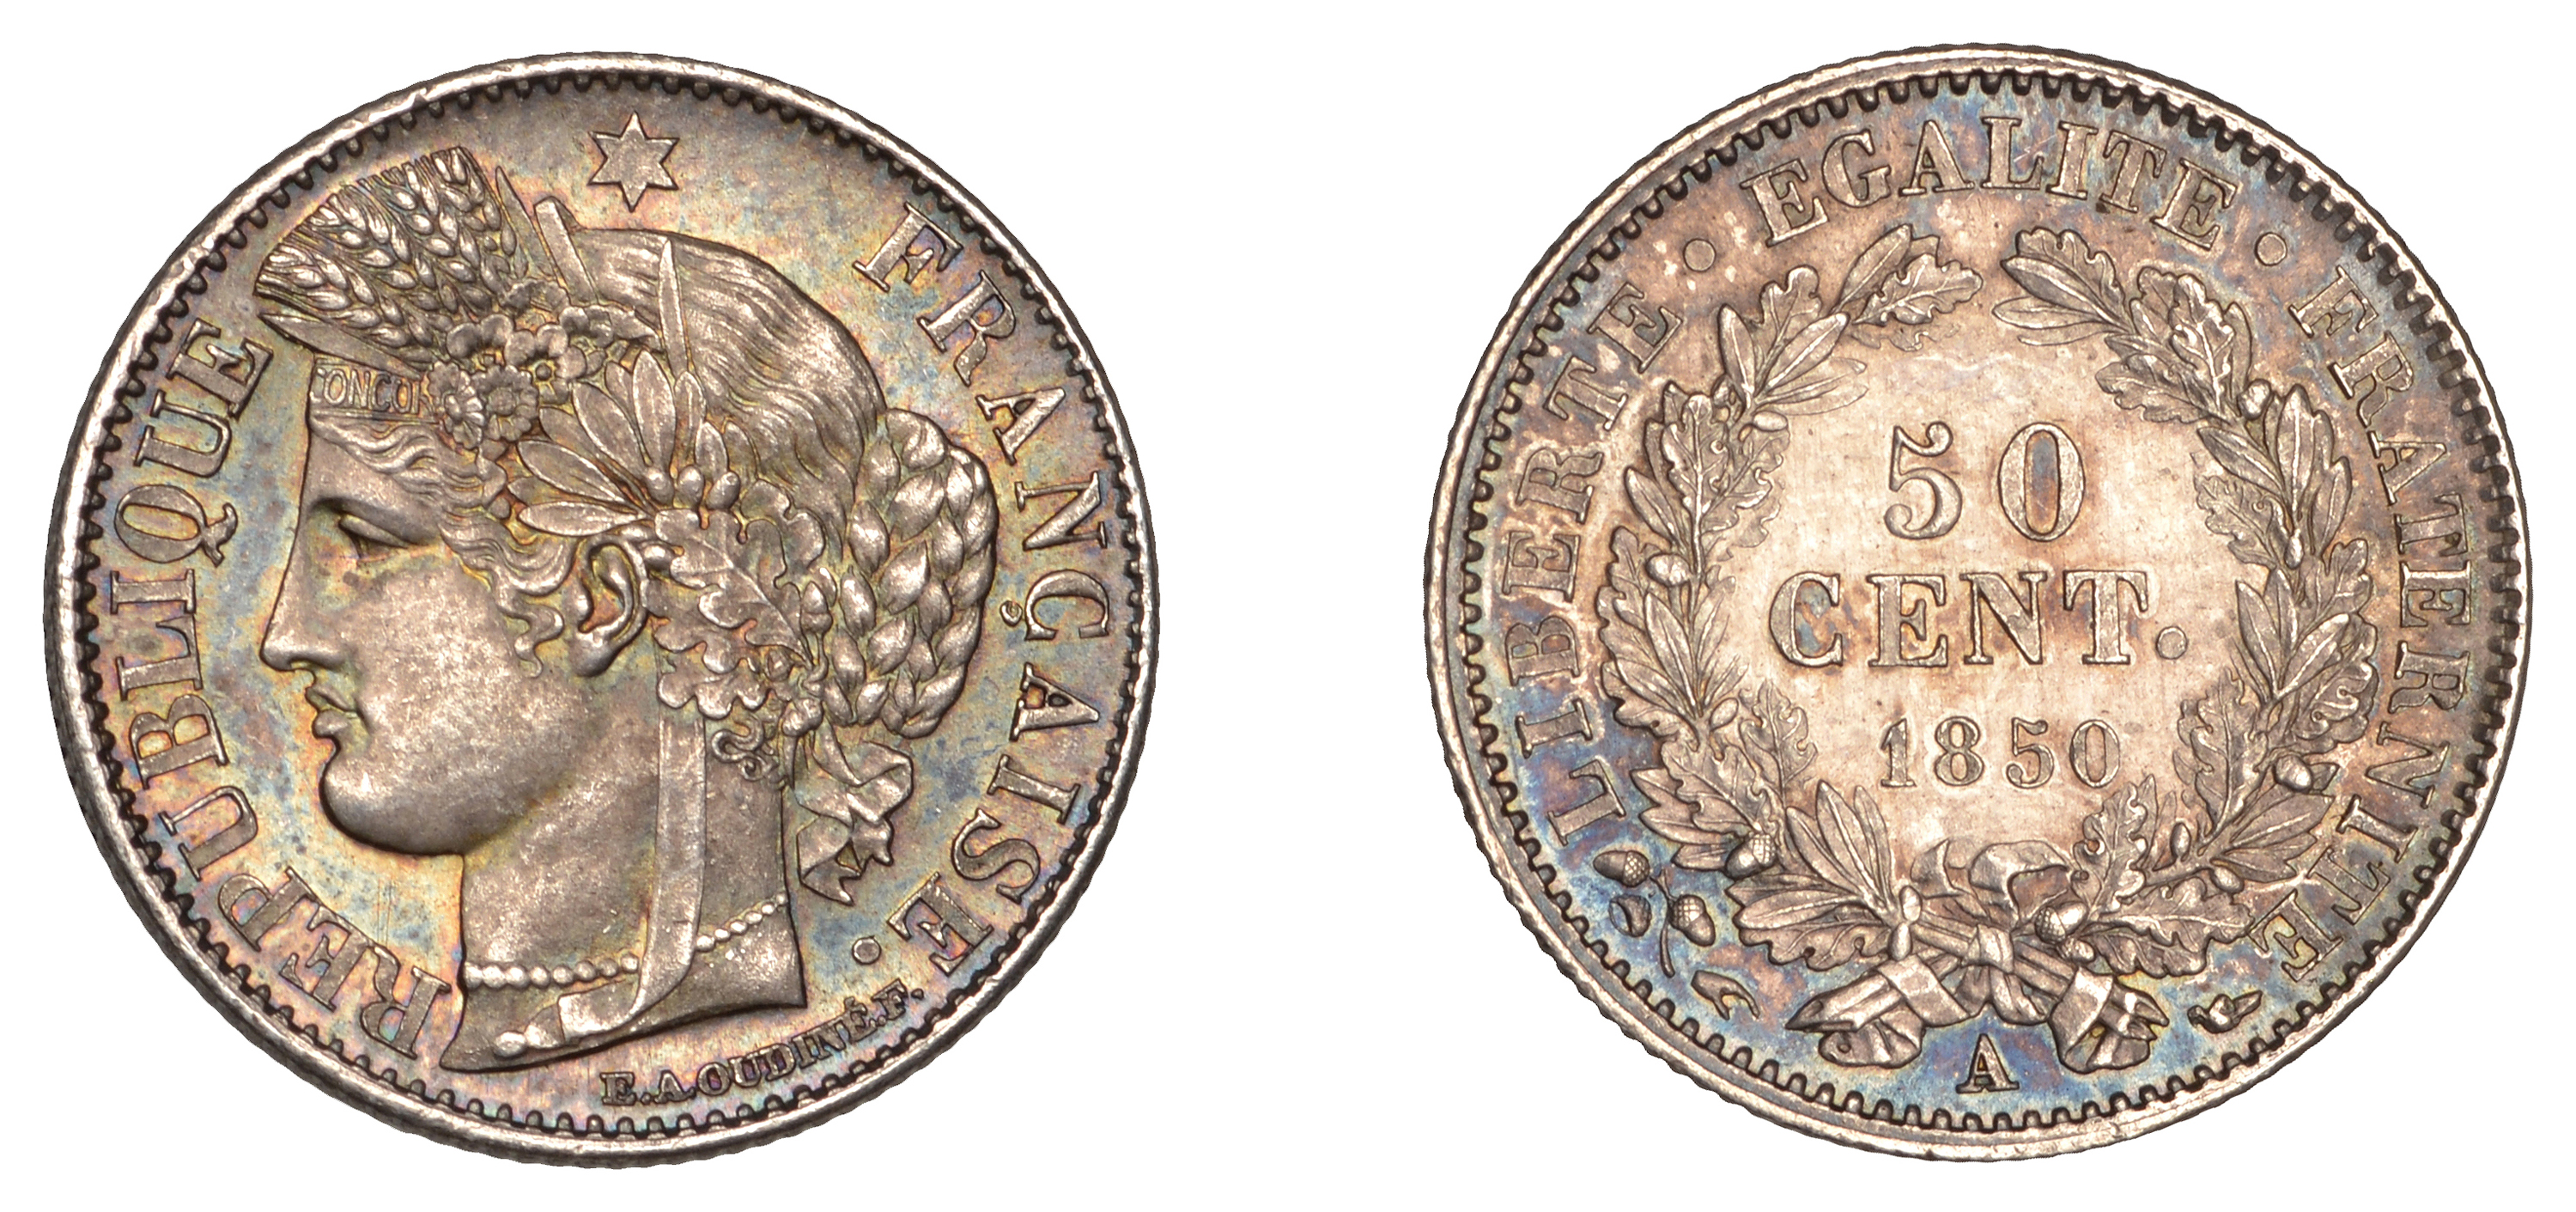 France, Second Republic (1848-1852), 50 Centimes, 1850a, Paris (Gad. 411; KM 769.1). Extreme...